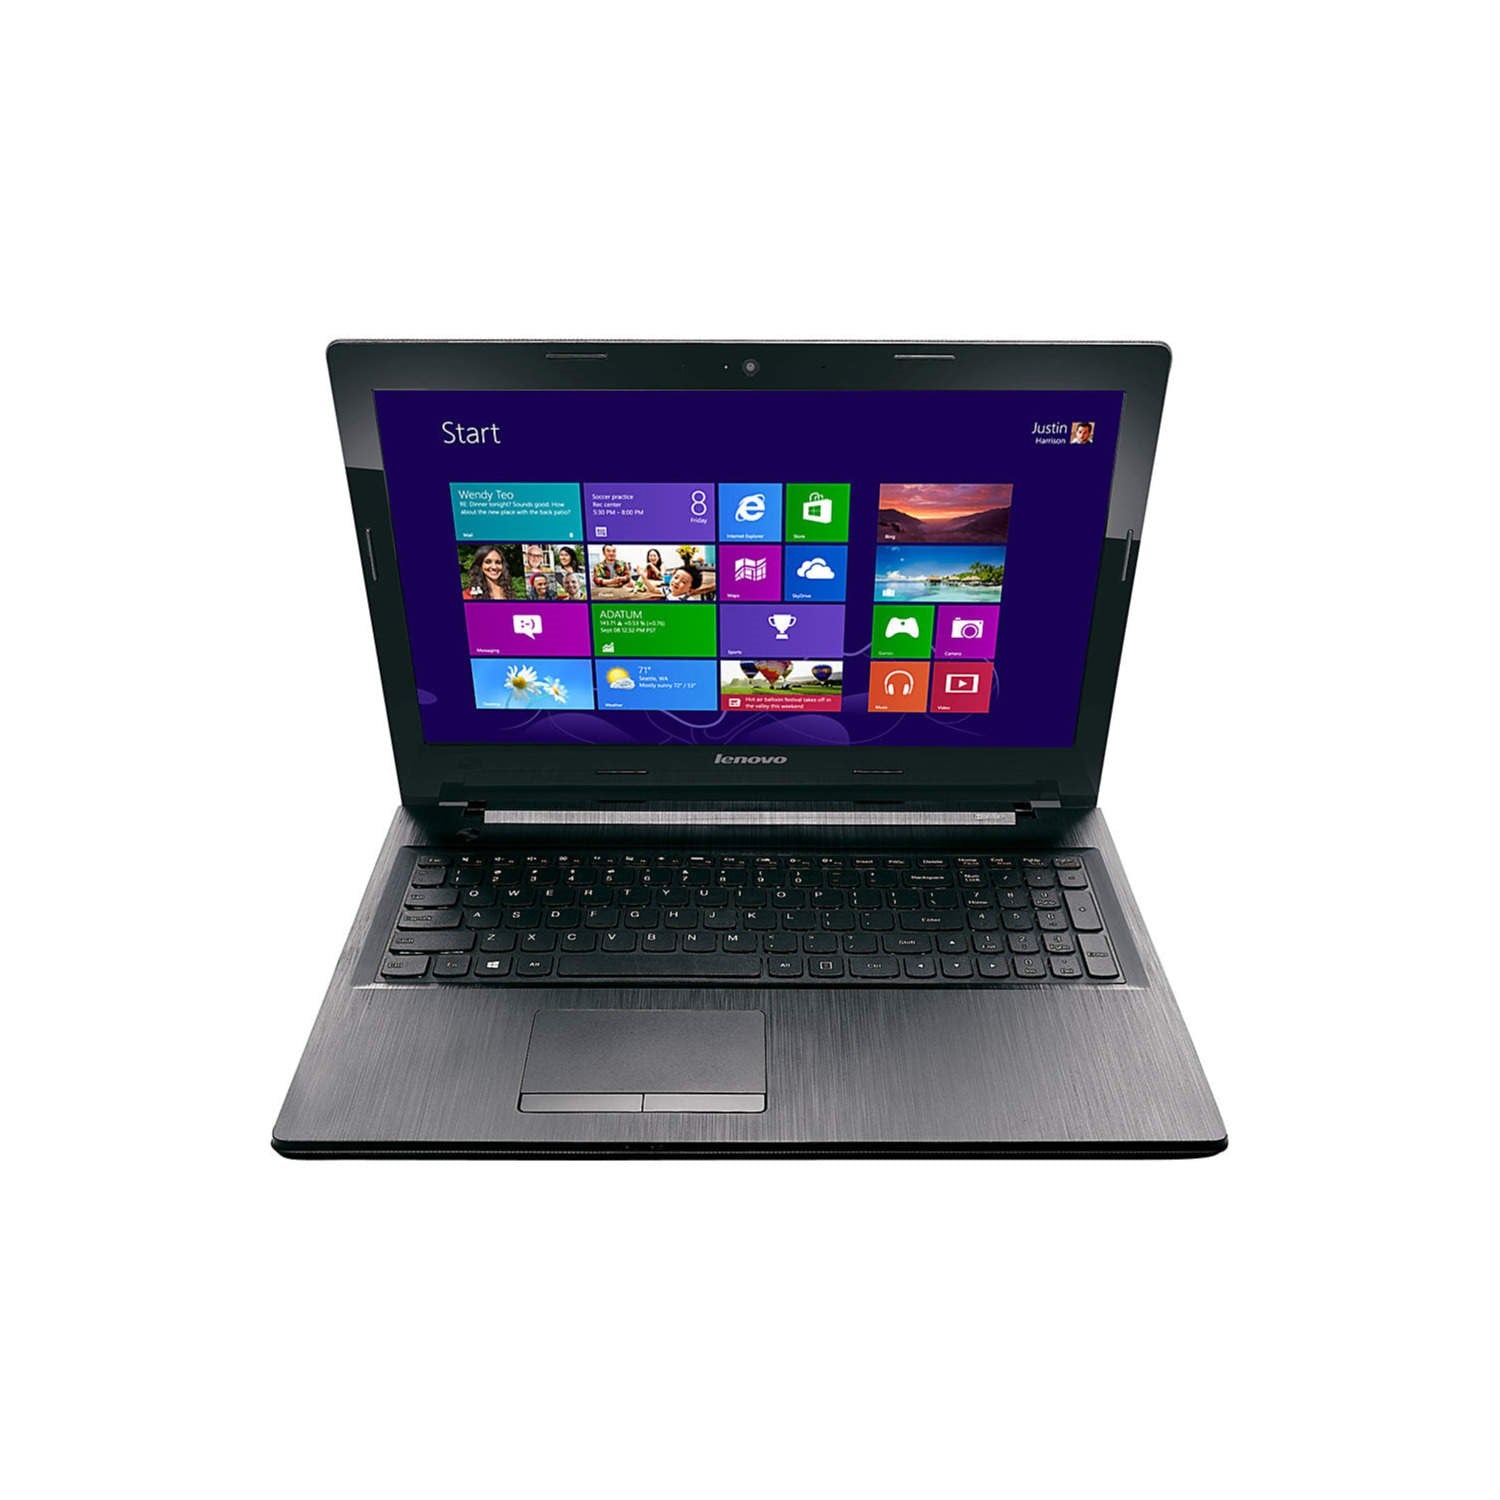 Lenovo G50-45 Notebook, AMD A8, 8GB RAM, 1TB HDD, 15.6" - Black